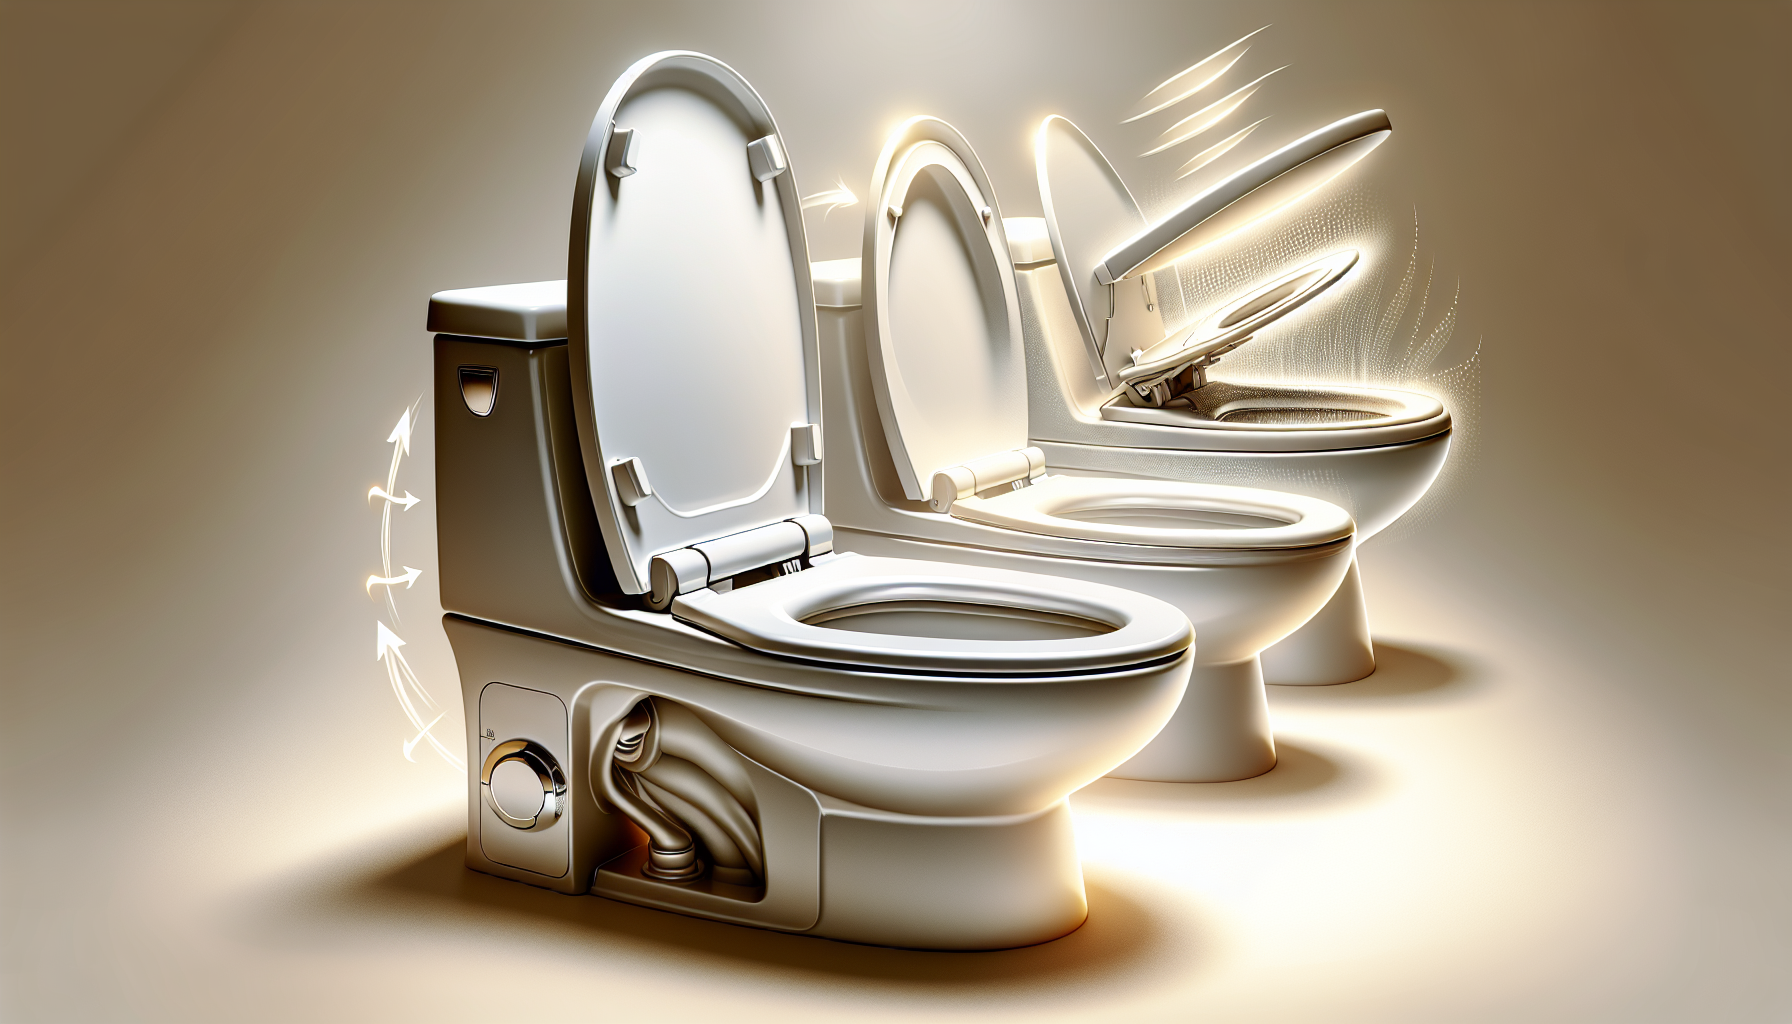 Illustration von Toilettensitzen mit Absenkautomatik und Sitzheizung